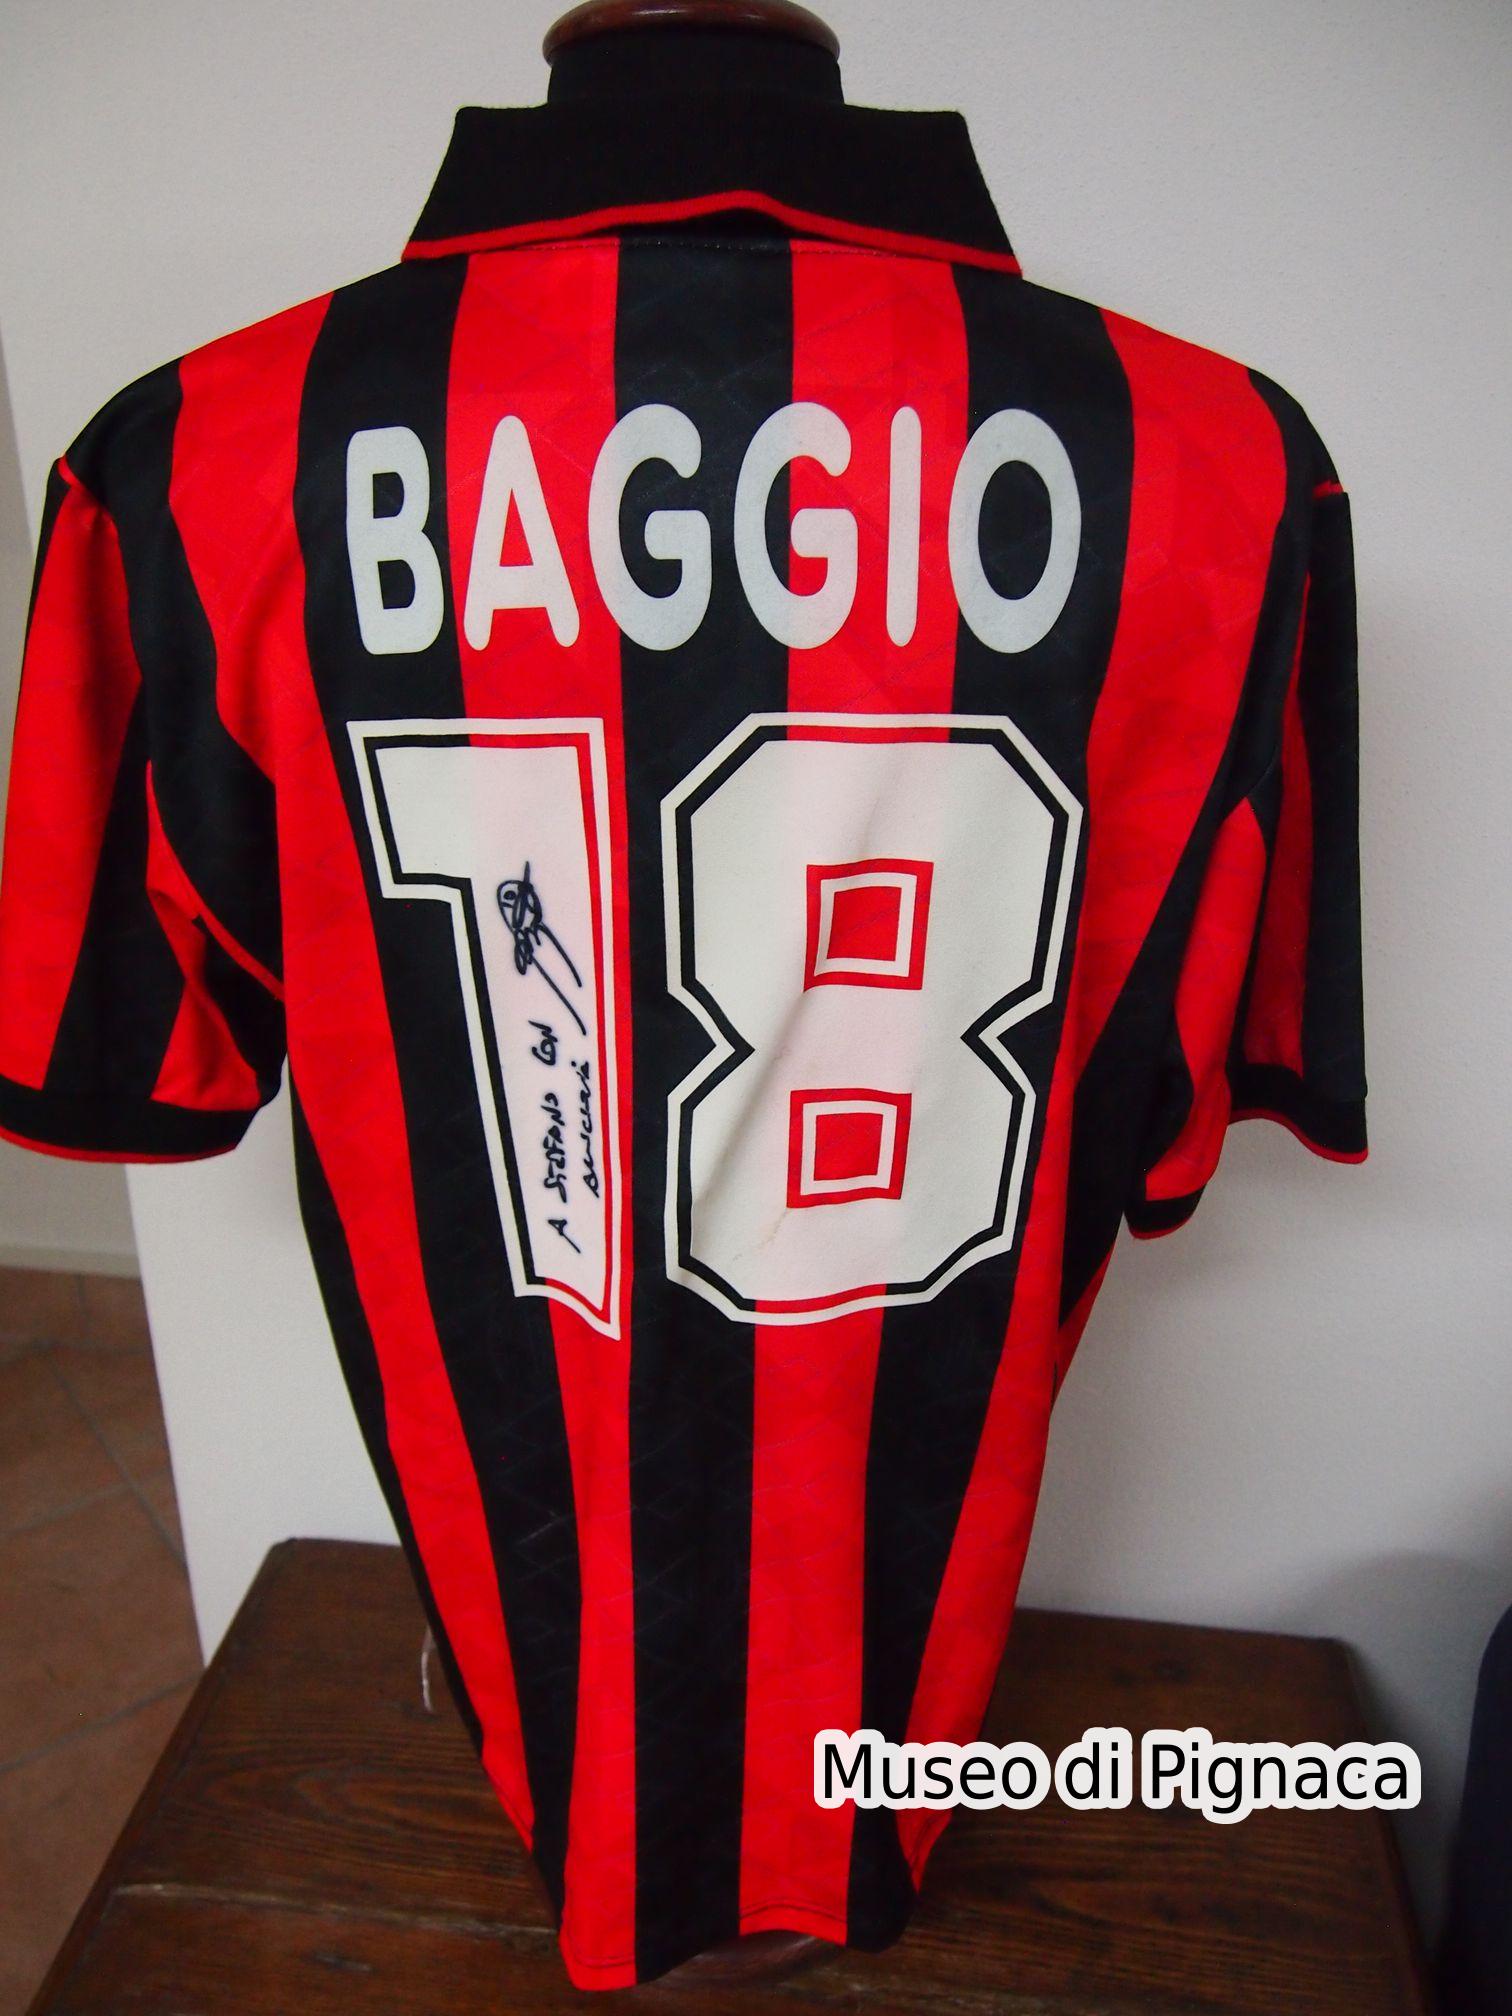 Roberto Baggio - Maglia Milan 1995-96 (Retro)